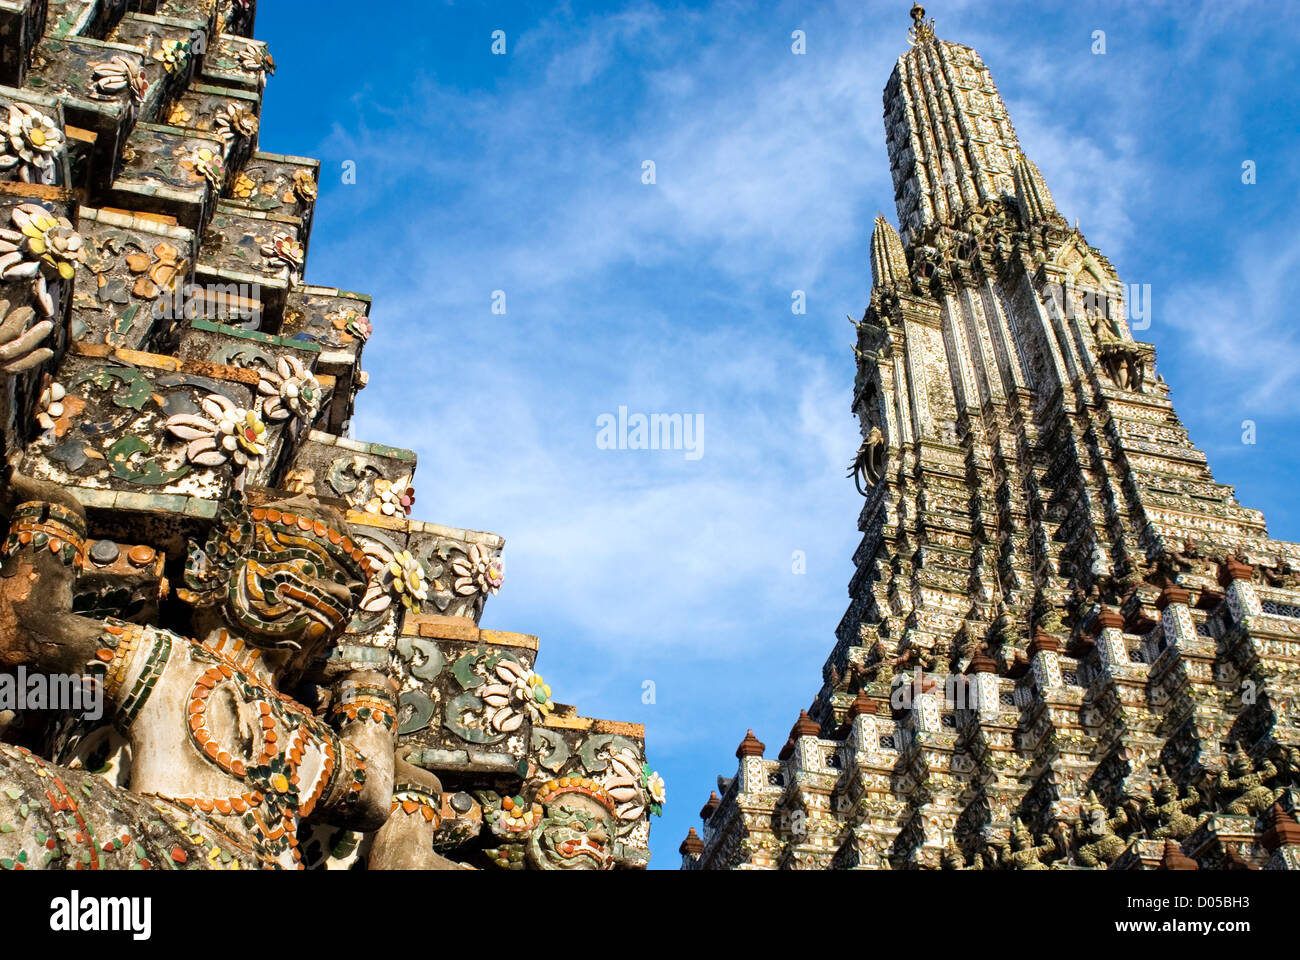 Détail architectural au Prang de Wat Arun, Bangkok, Thaïlande | Architektur Détail suis Wat Arun, Bangkok, Thaïlande Banque D'Images